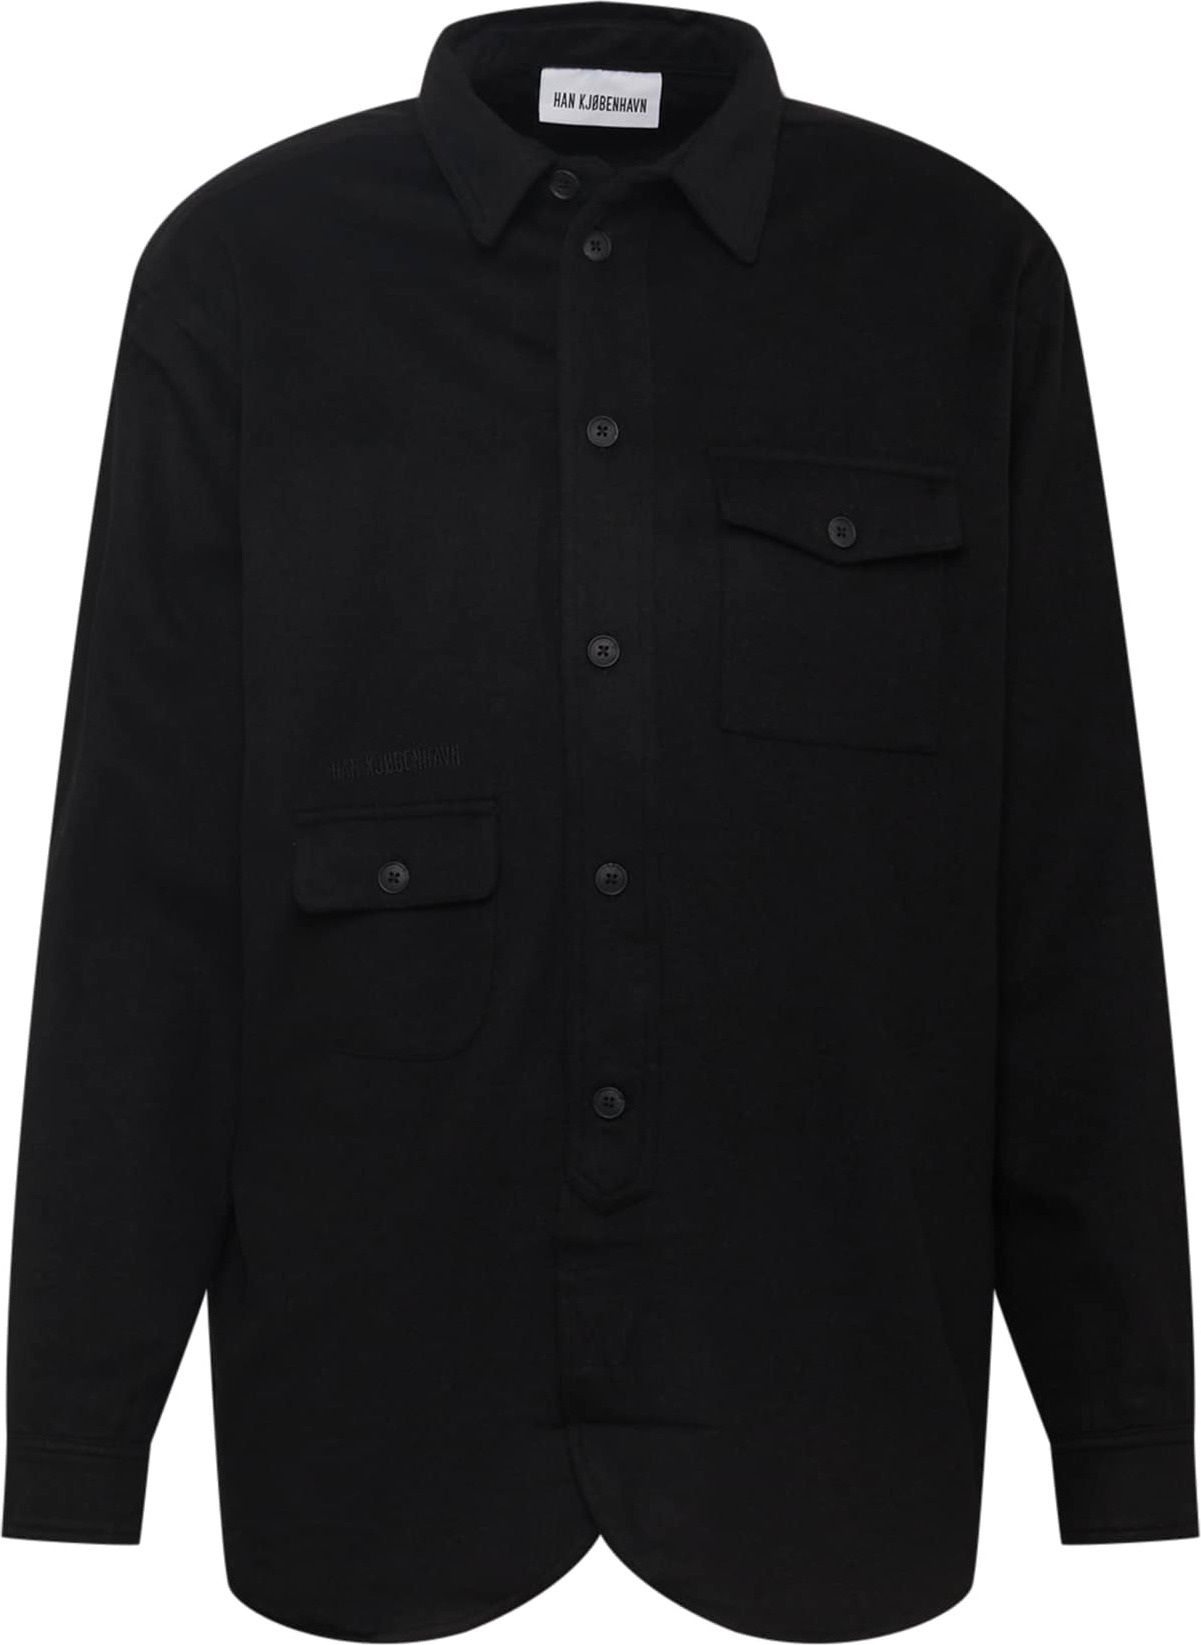 Košile Han Kjøbenhavn černá